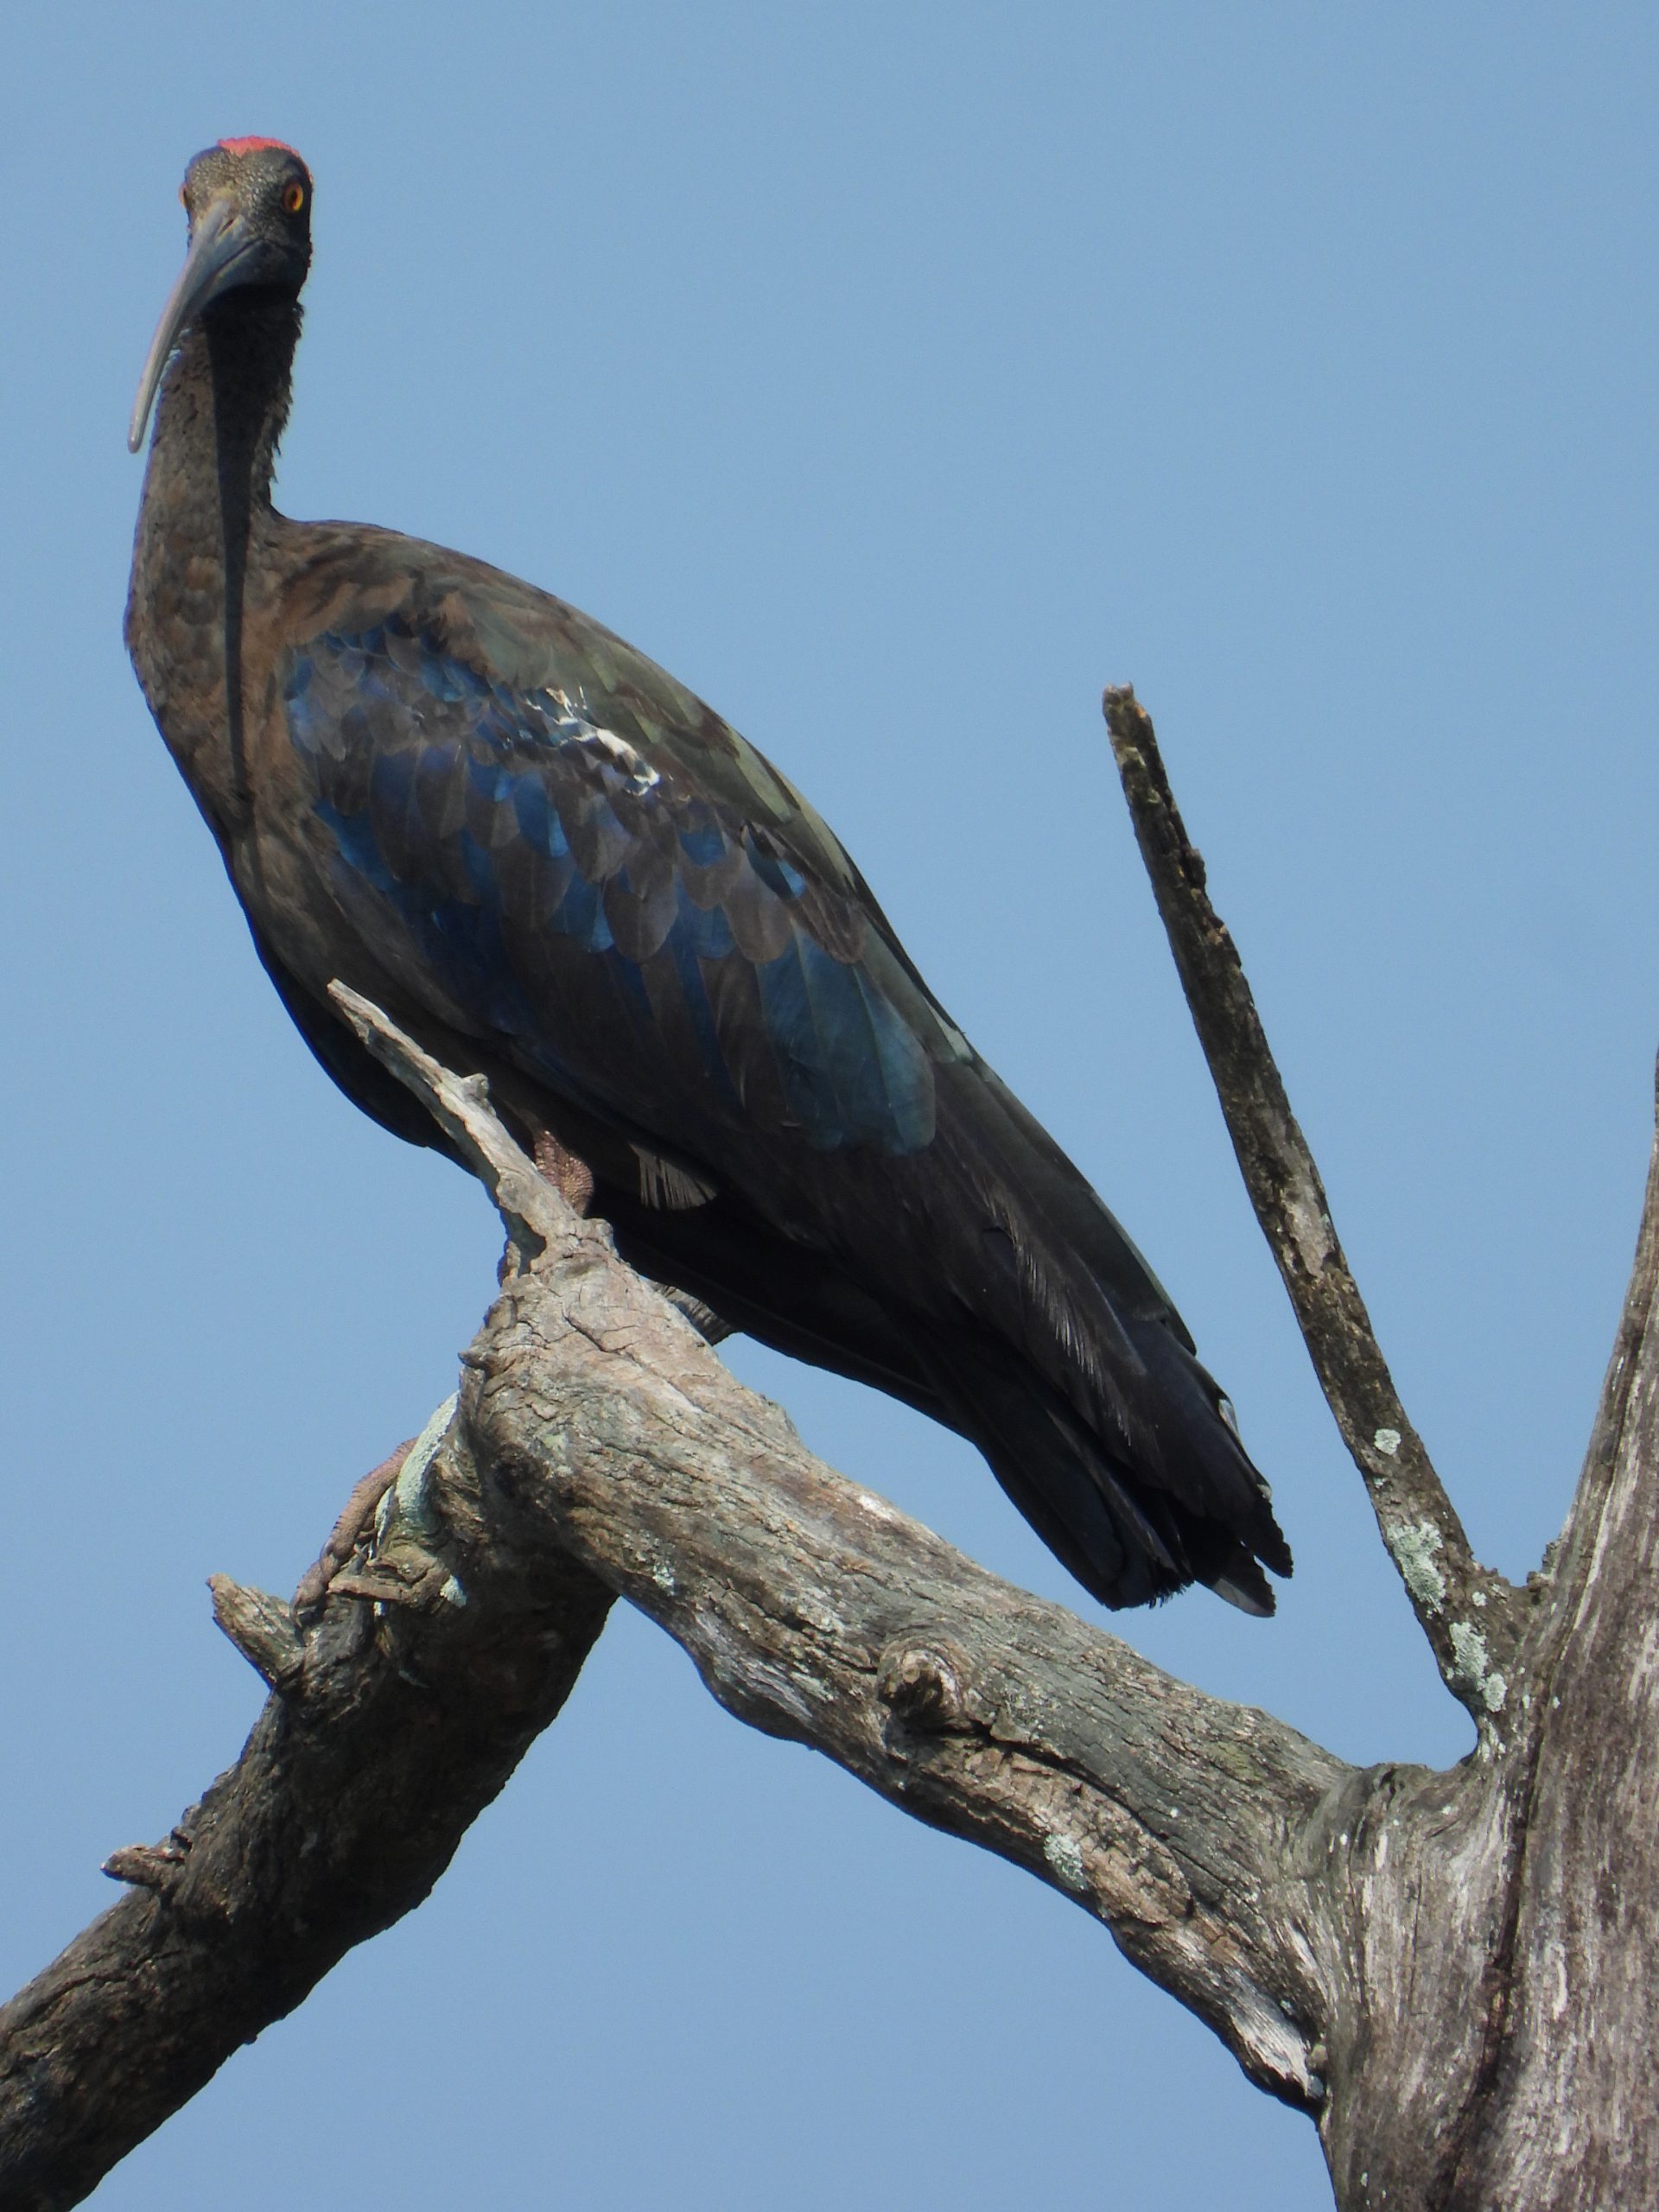 An ibis bird